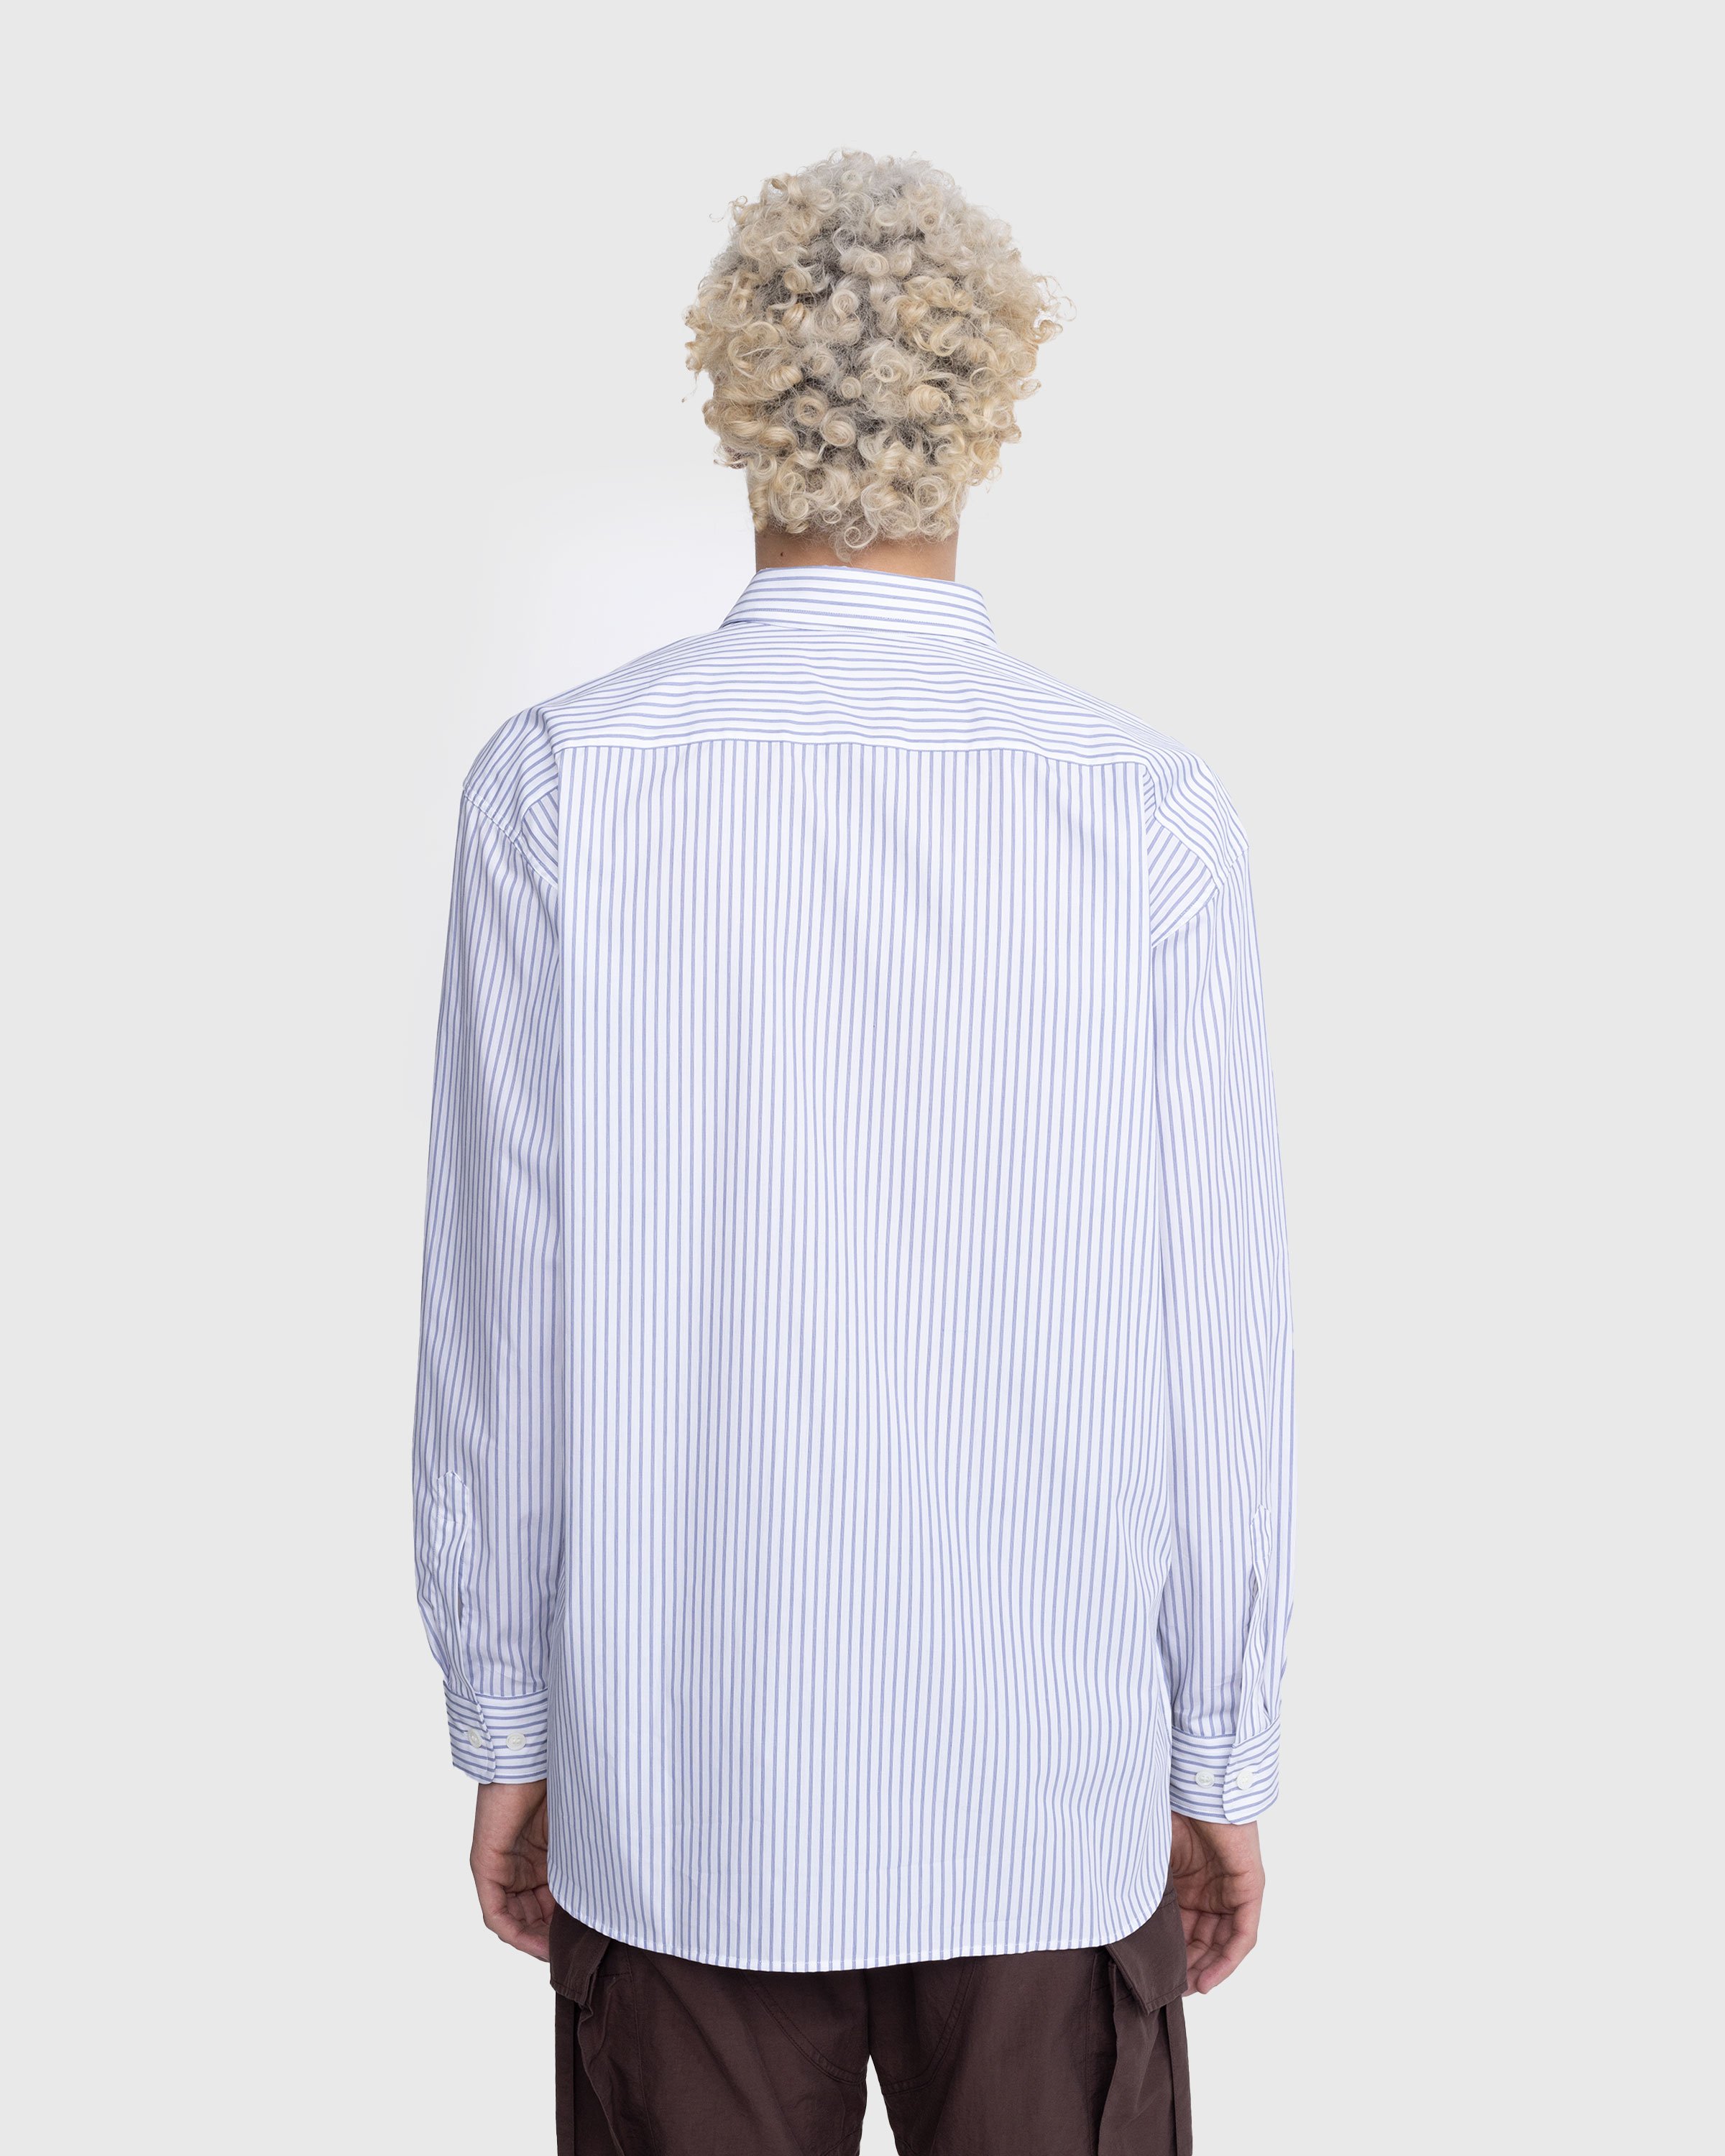 Dries van Noten - Croom Shirt White - Clothing - White - Image 3